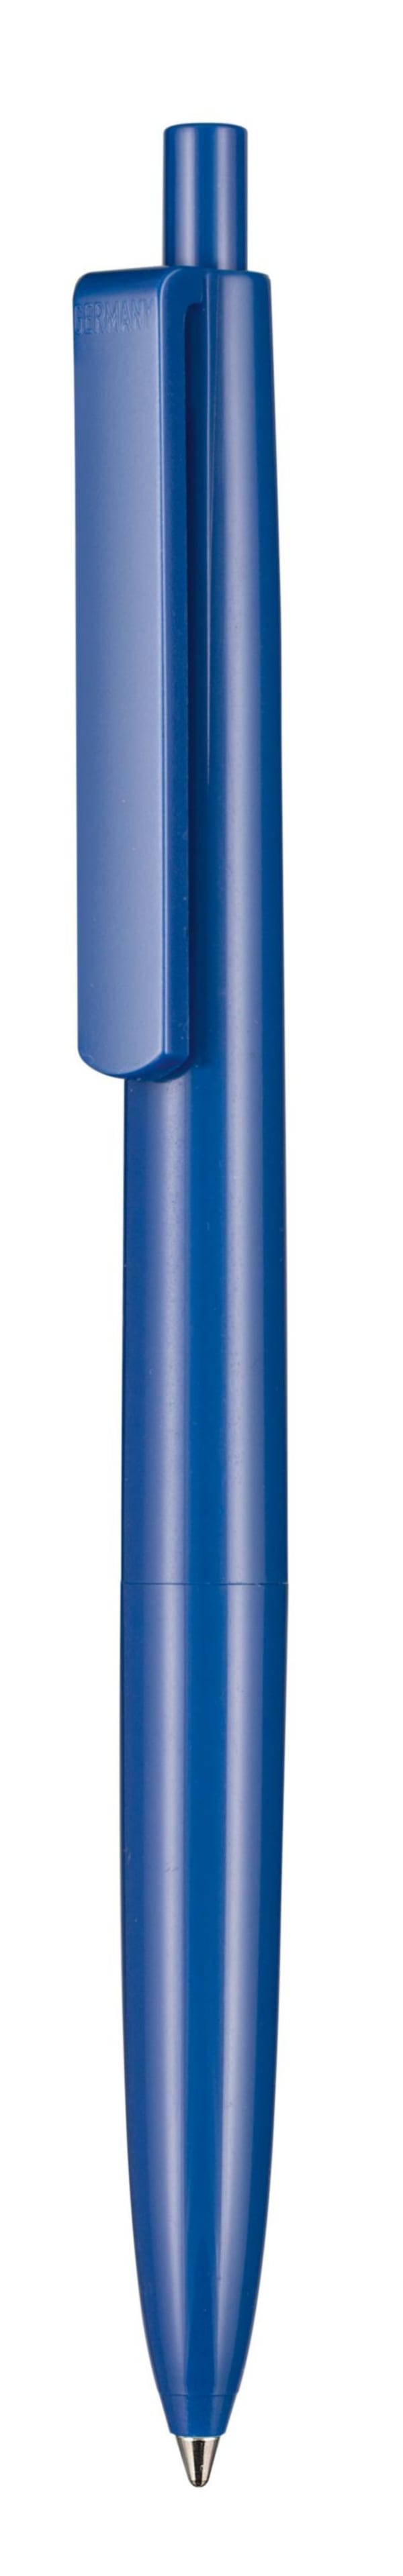 Kugelschreiber-New-Basic-blau-dokumentenecht-X20-Jogger-Mine-Blau-Frontansicht-1